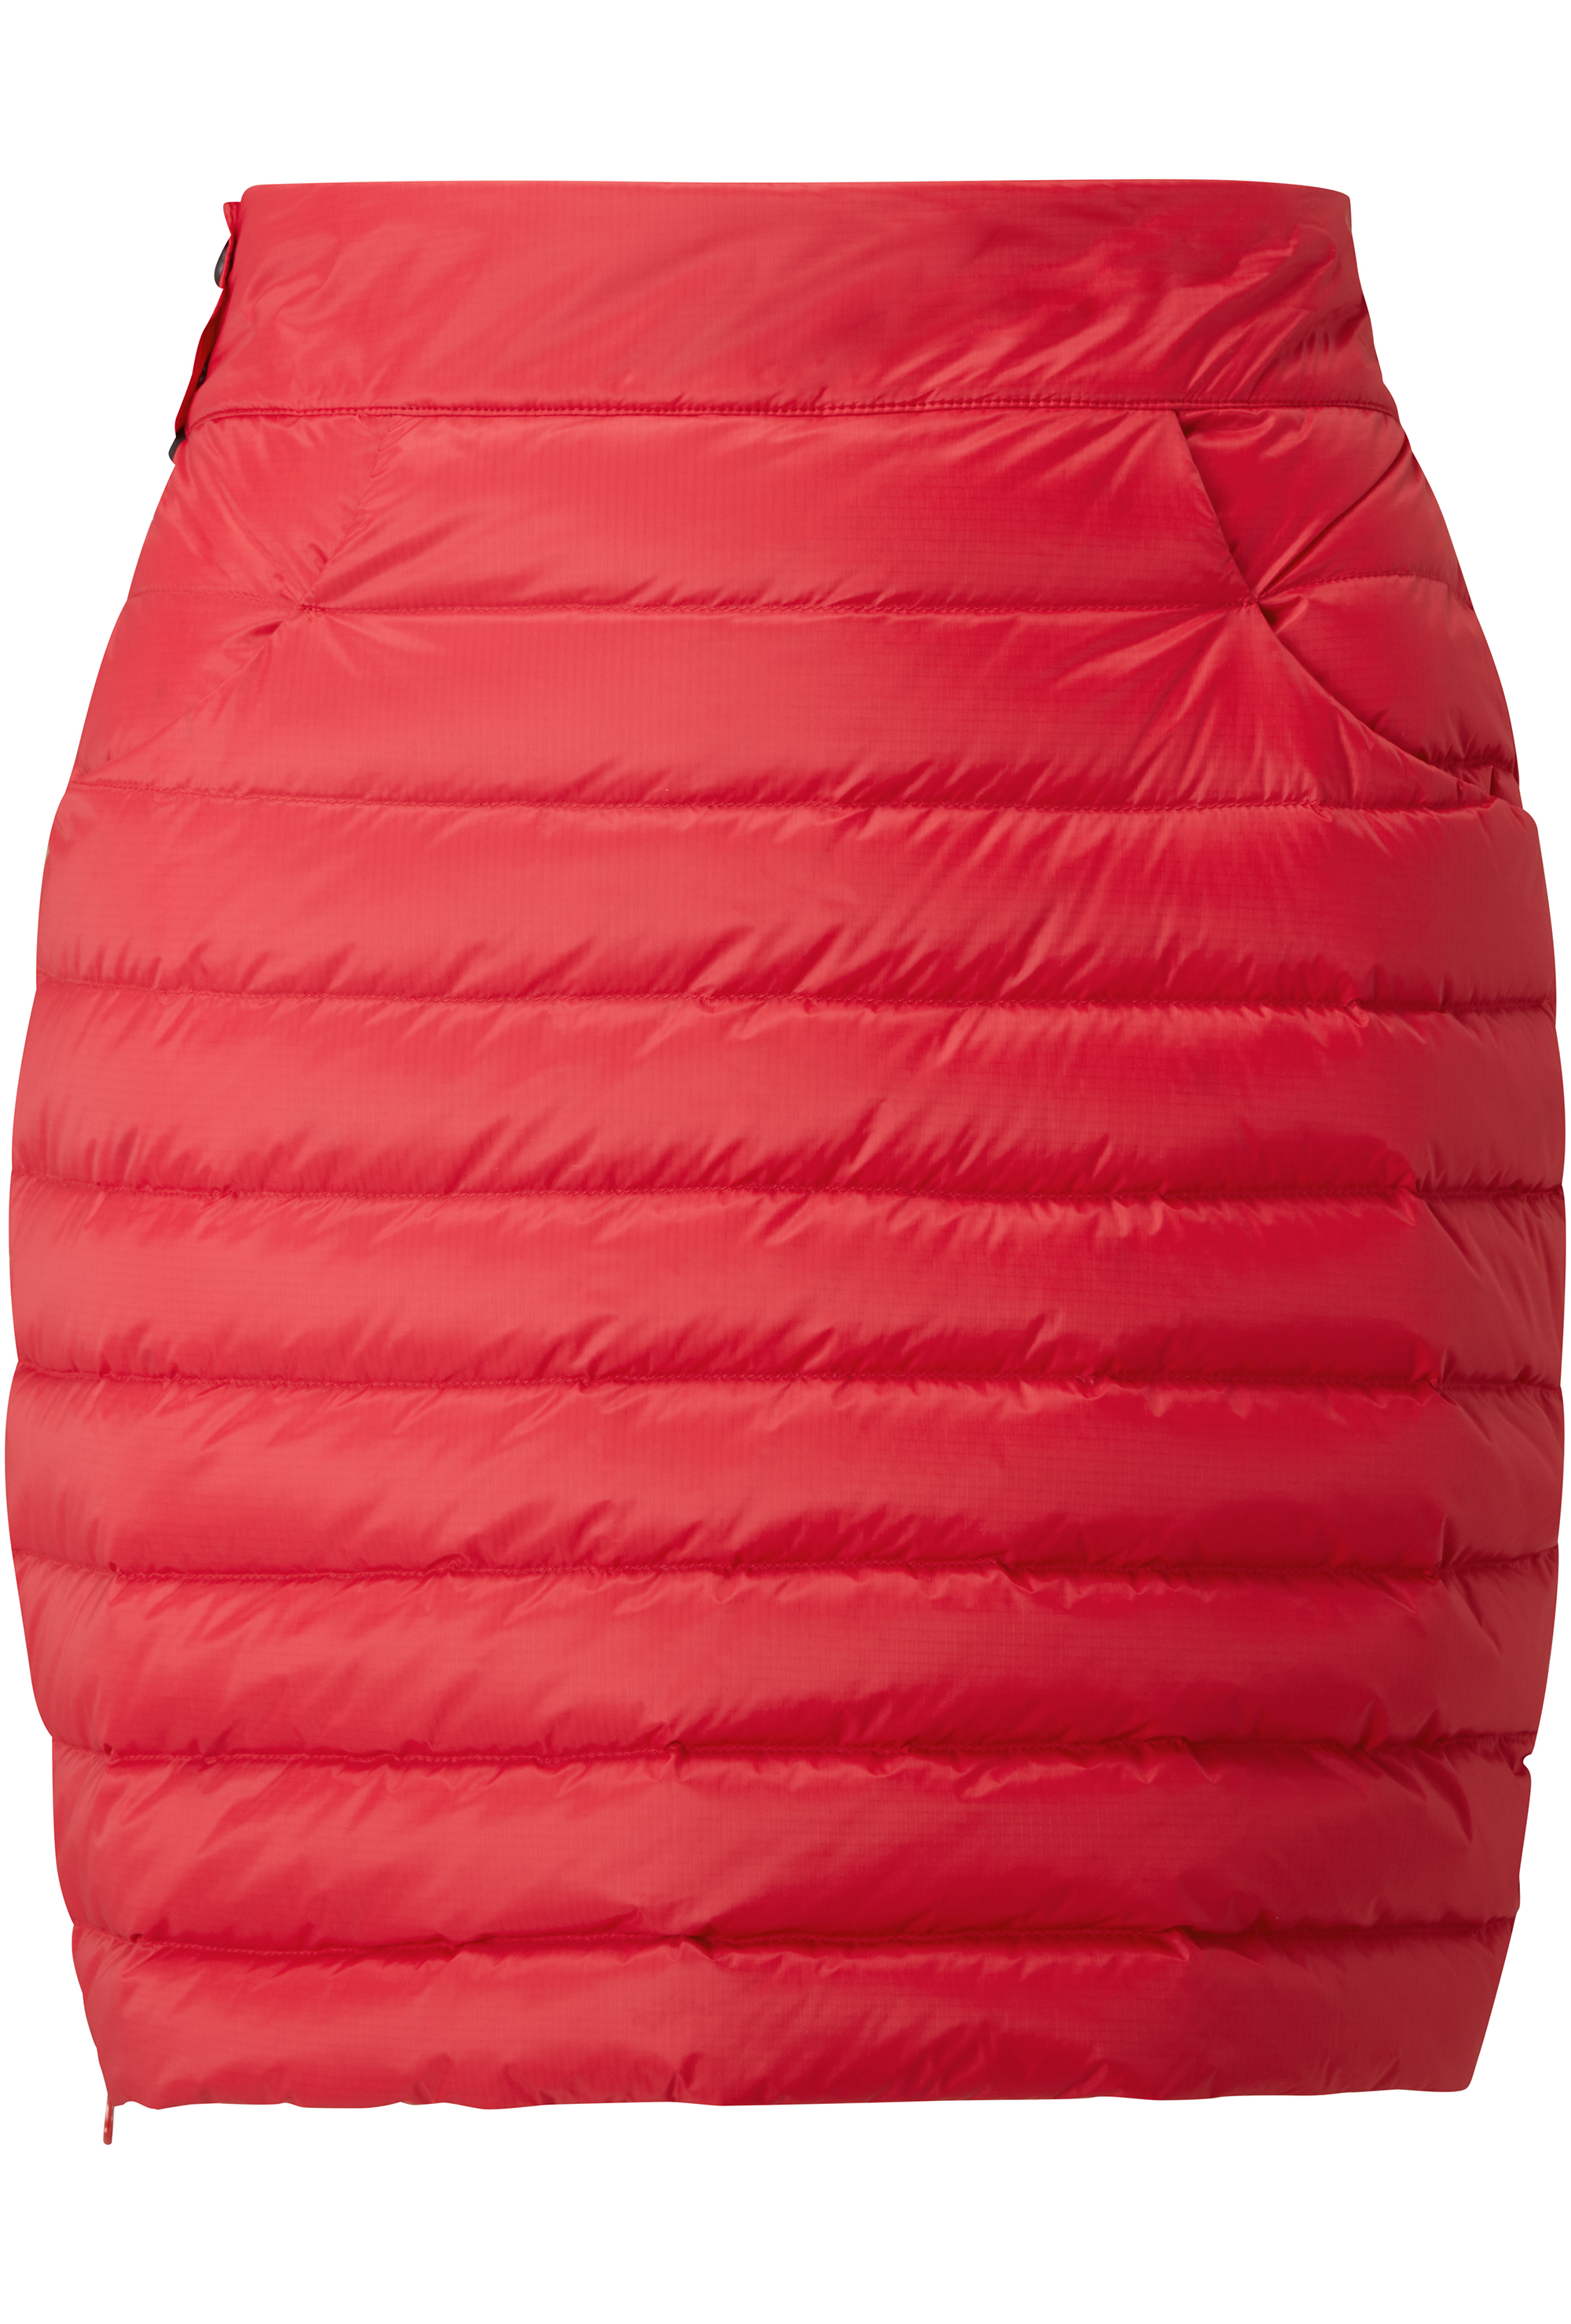 Dámská péřová sukně MOUNTAIN EQUIPMENT W's Frostline Skirt Capsicum Red L